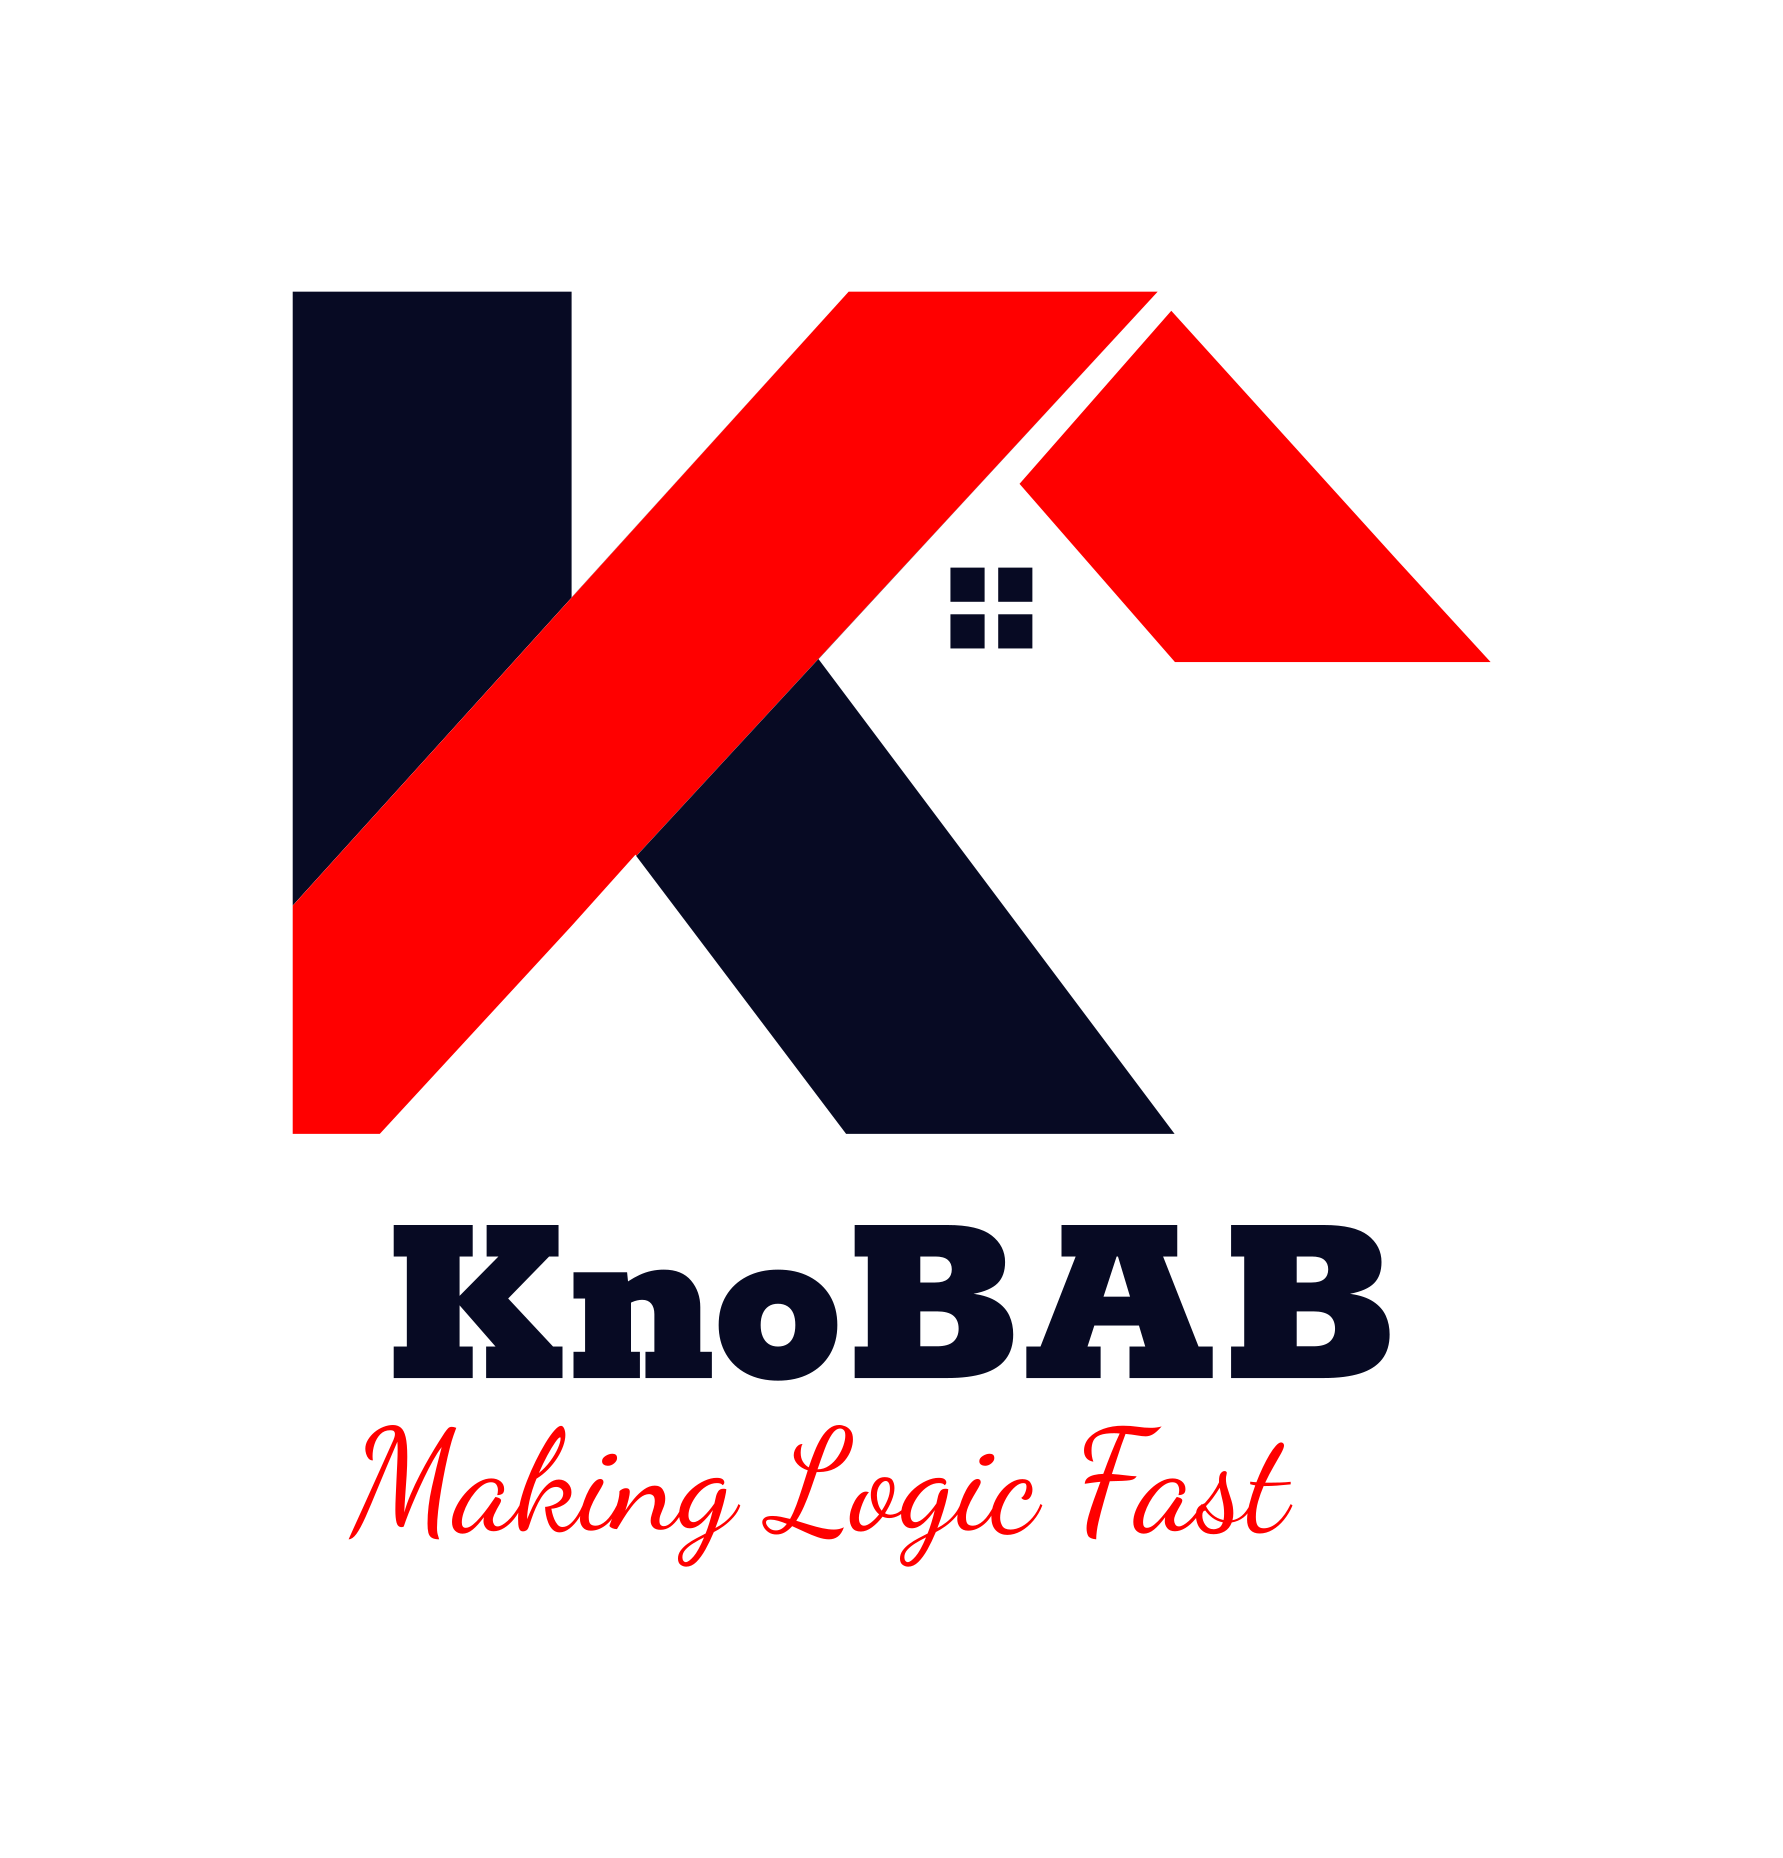 KnoBAB: Making Logic Fast